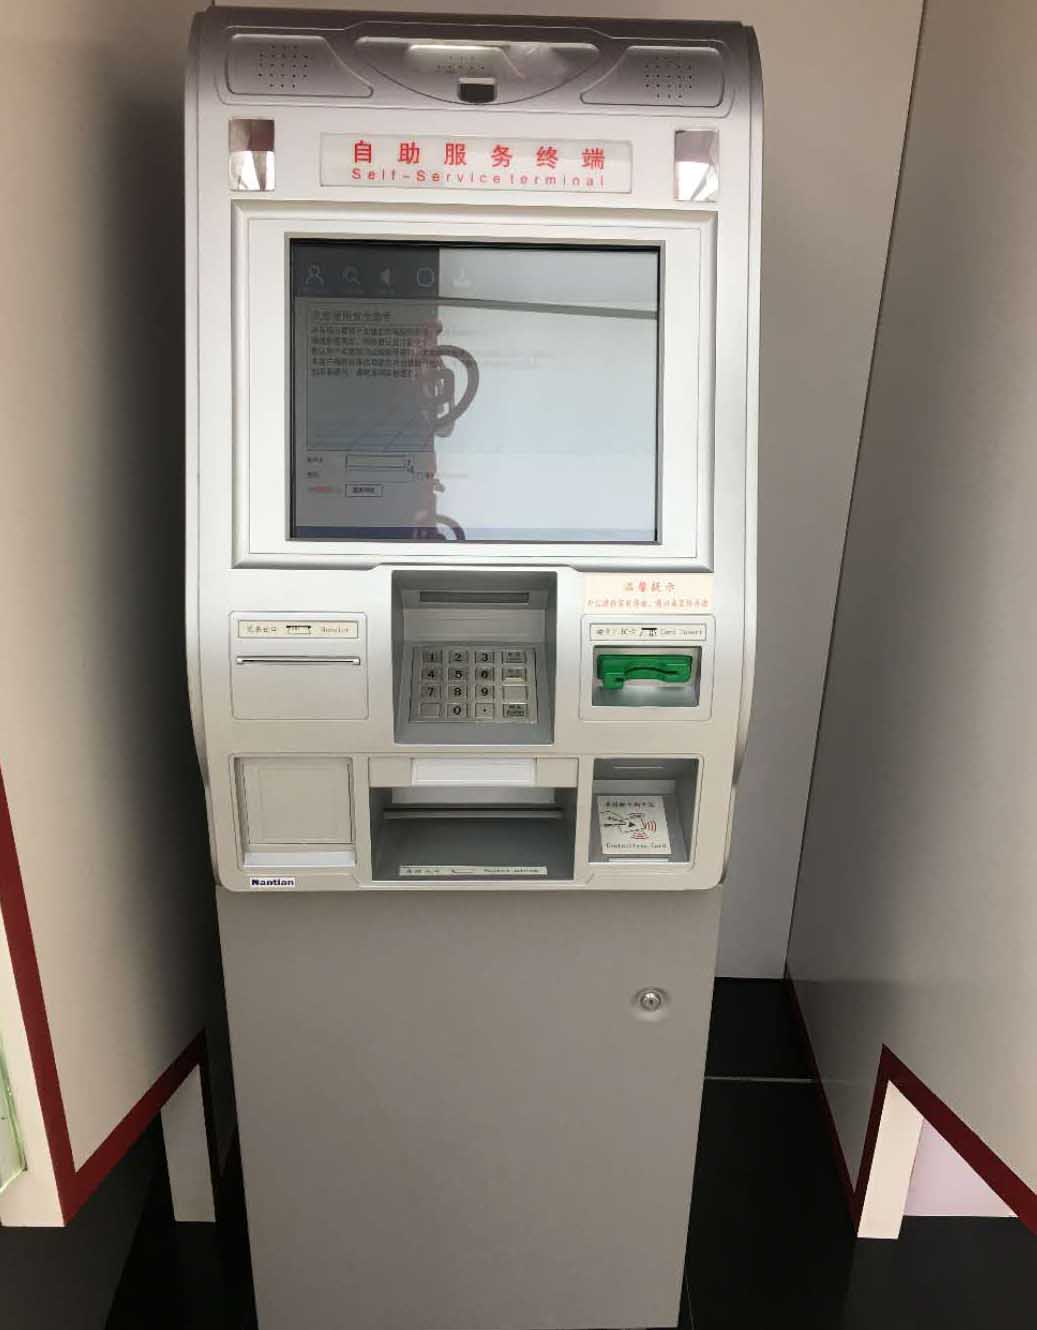 触摸屏玻星空体育·(中国)官方网站及条纹玻星空体育·(中国)官方网站在银行ATM机上的应用